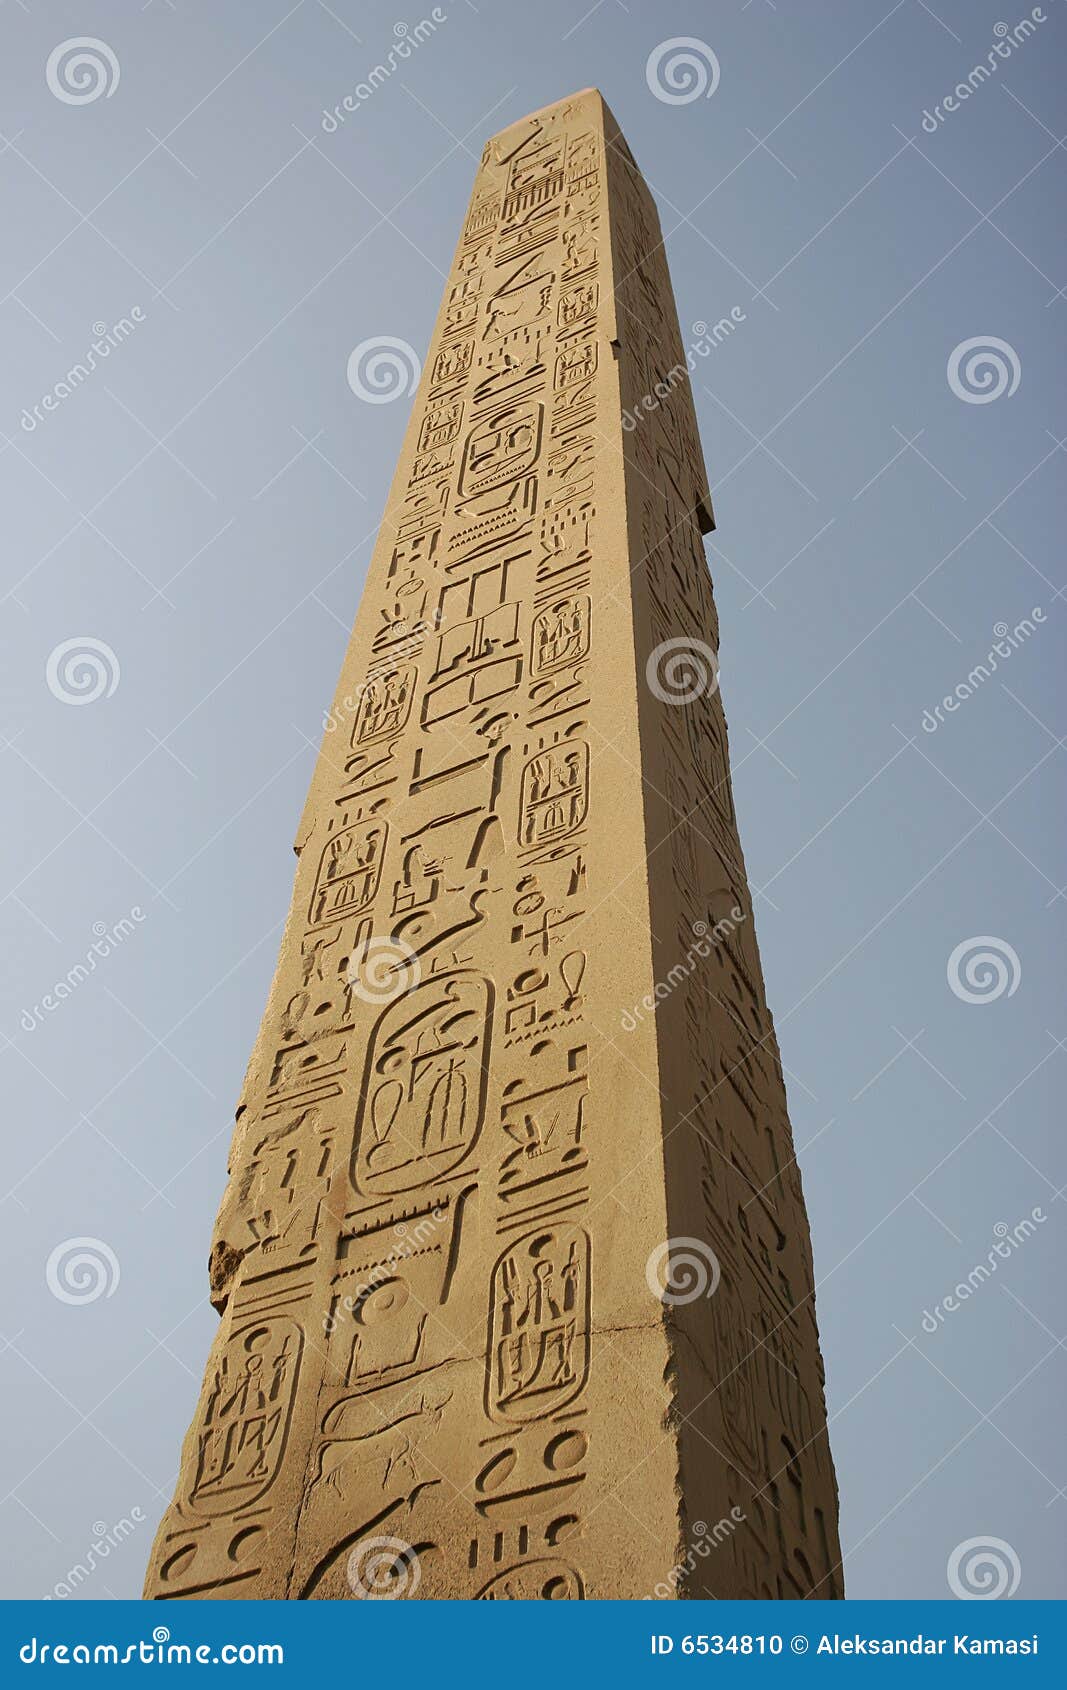 Karnak obelisku świątynia